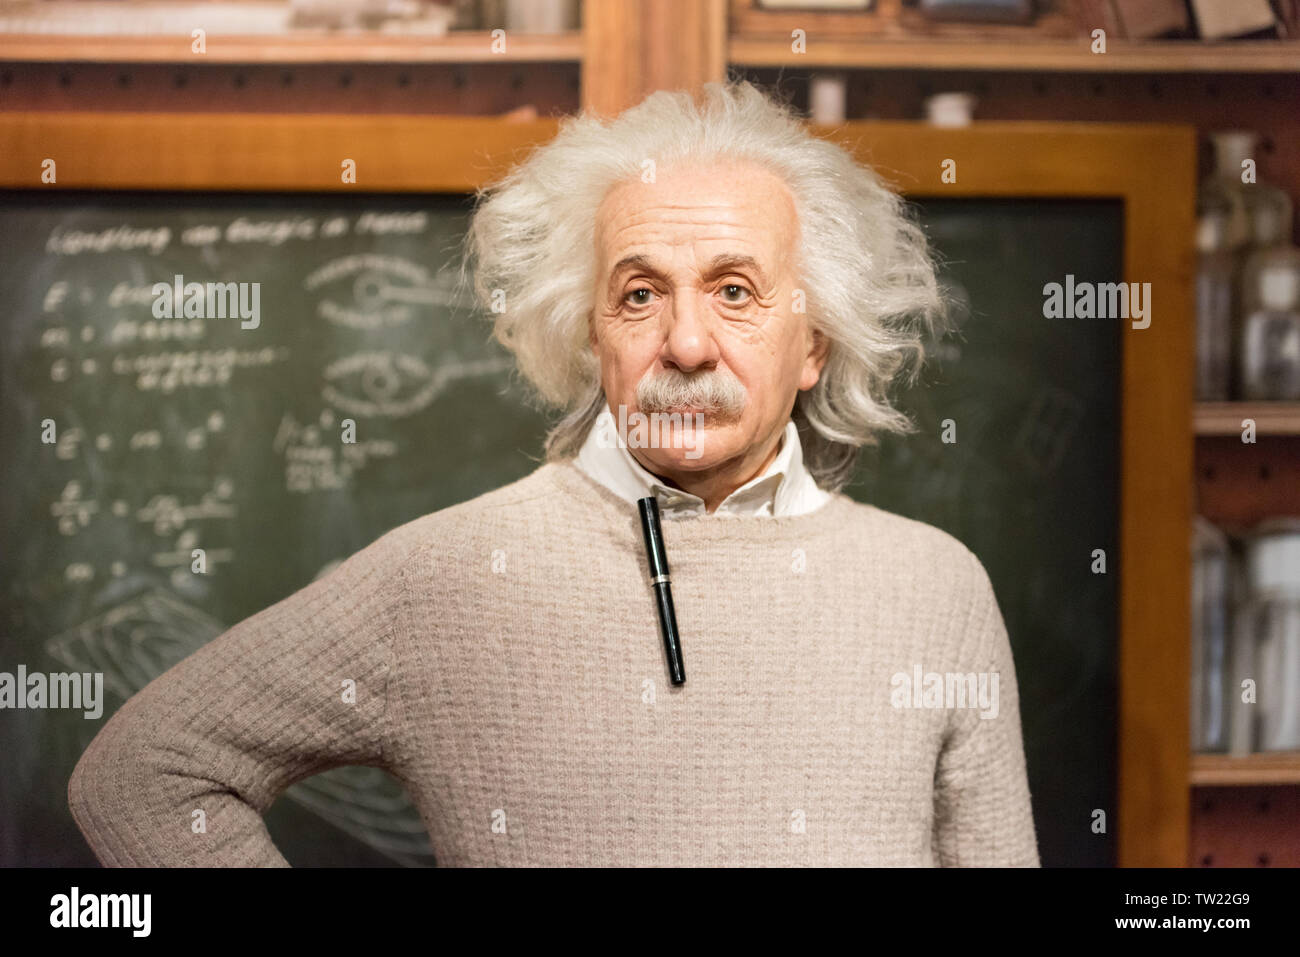 ISTANBUL, Türkei - 16. MÄRZ 2017: Albert Einstein Wachsfigur bei Madame Tussauds Museum in Istanbul. Stockfoto